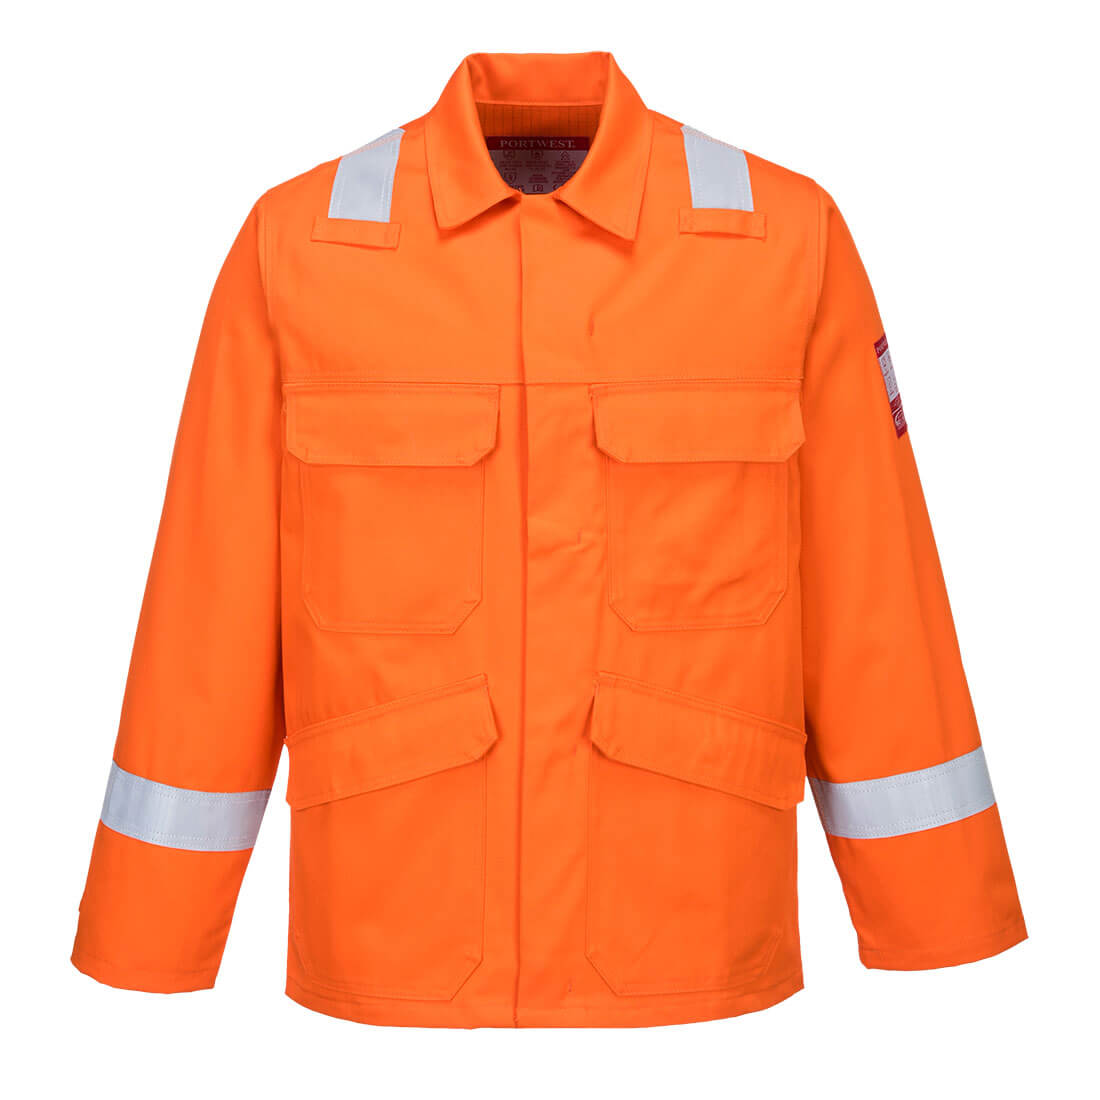 Bizflame Plus Jacke FR25 in Orange, Größe 4XL von Portwest